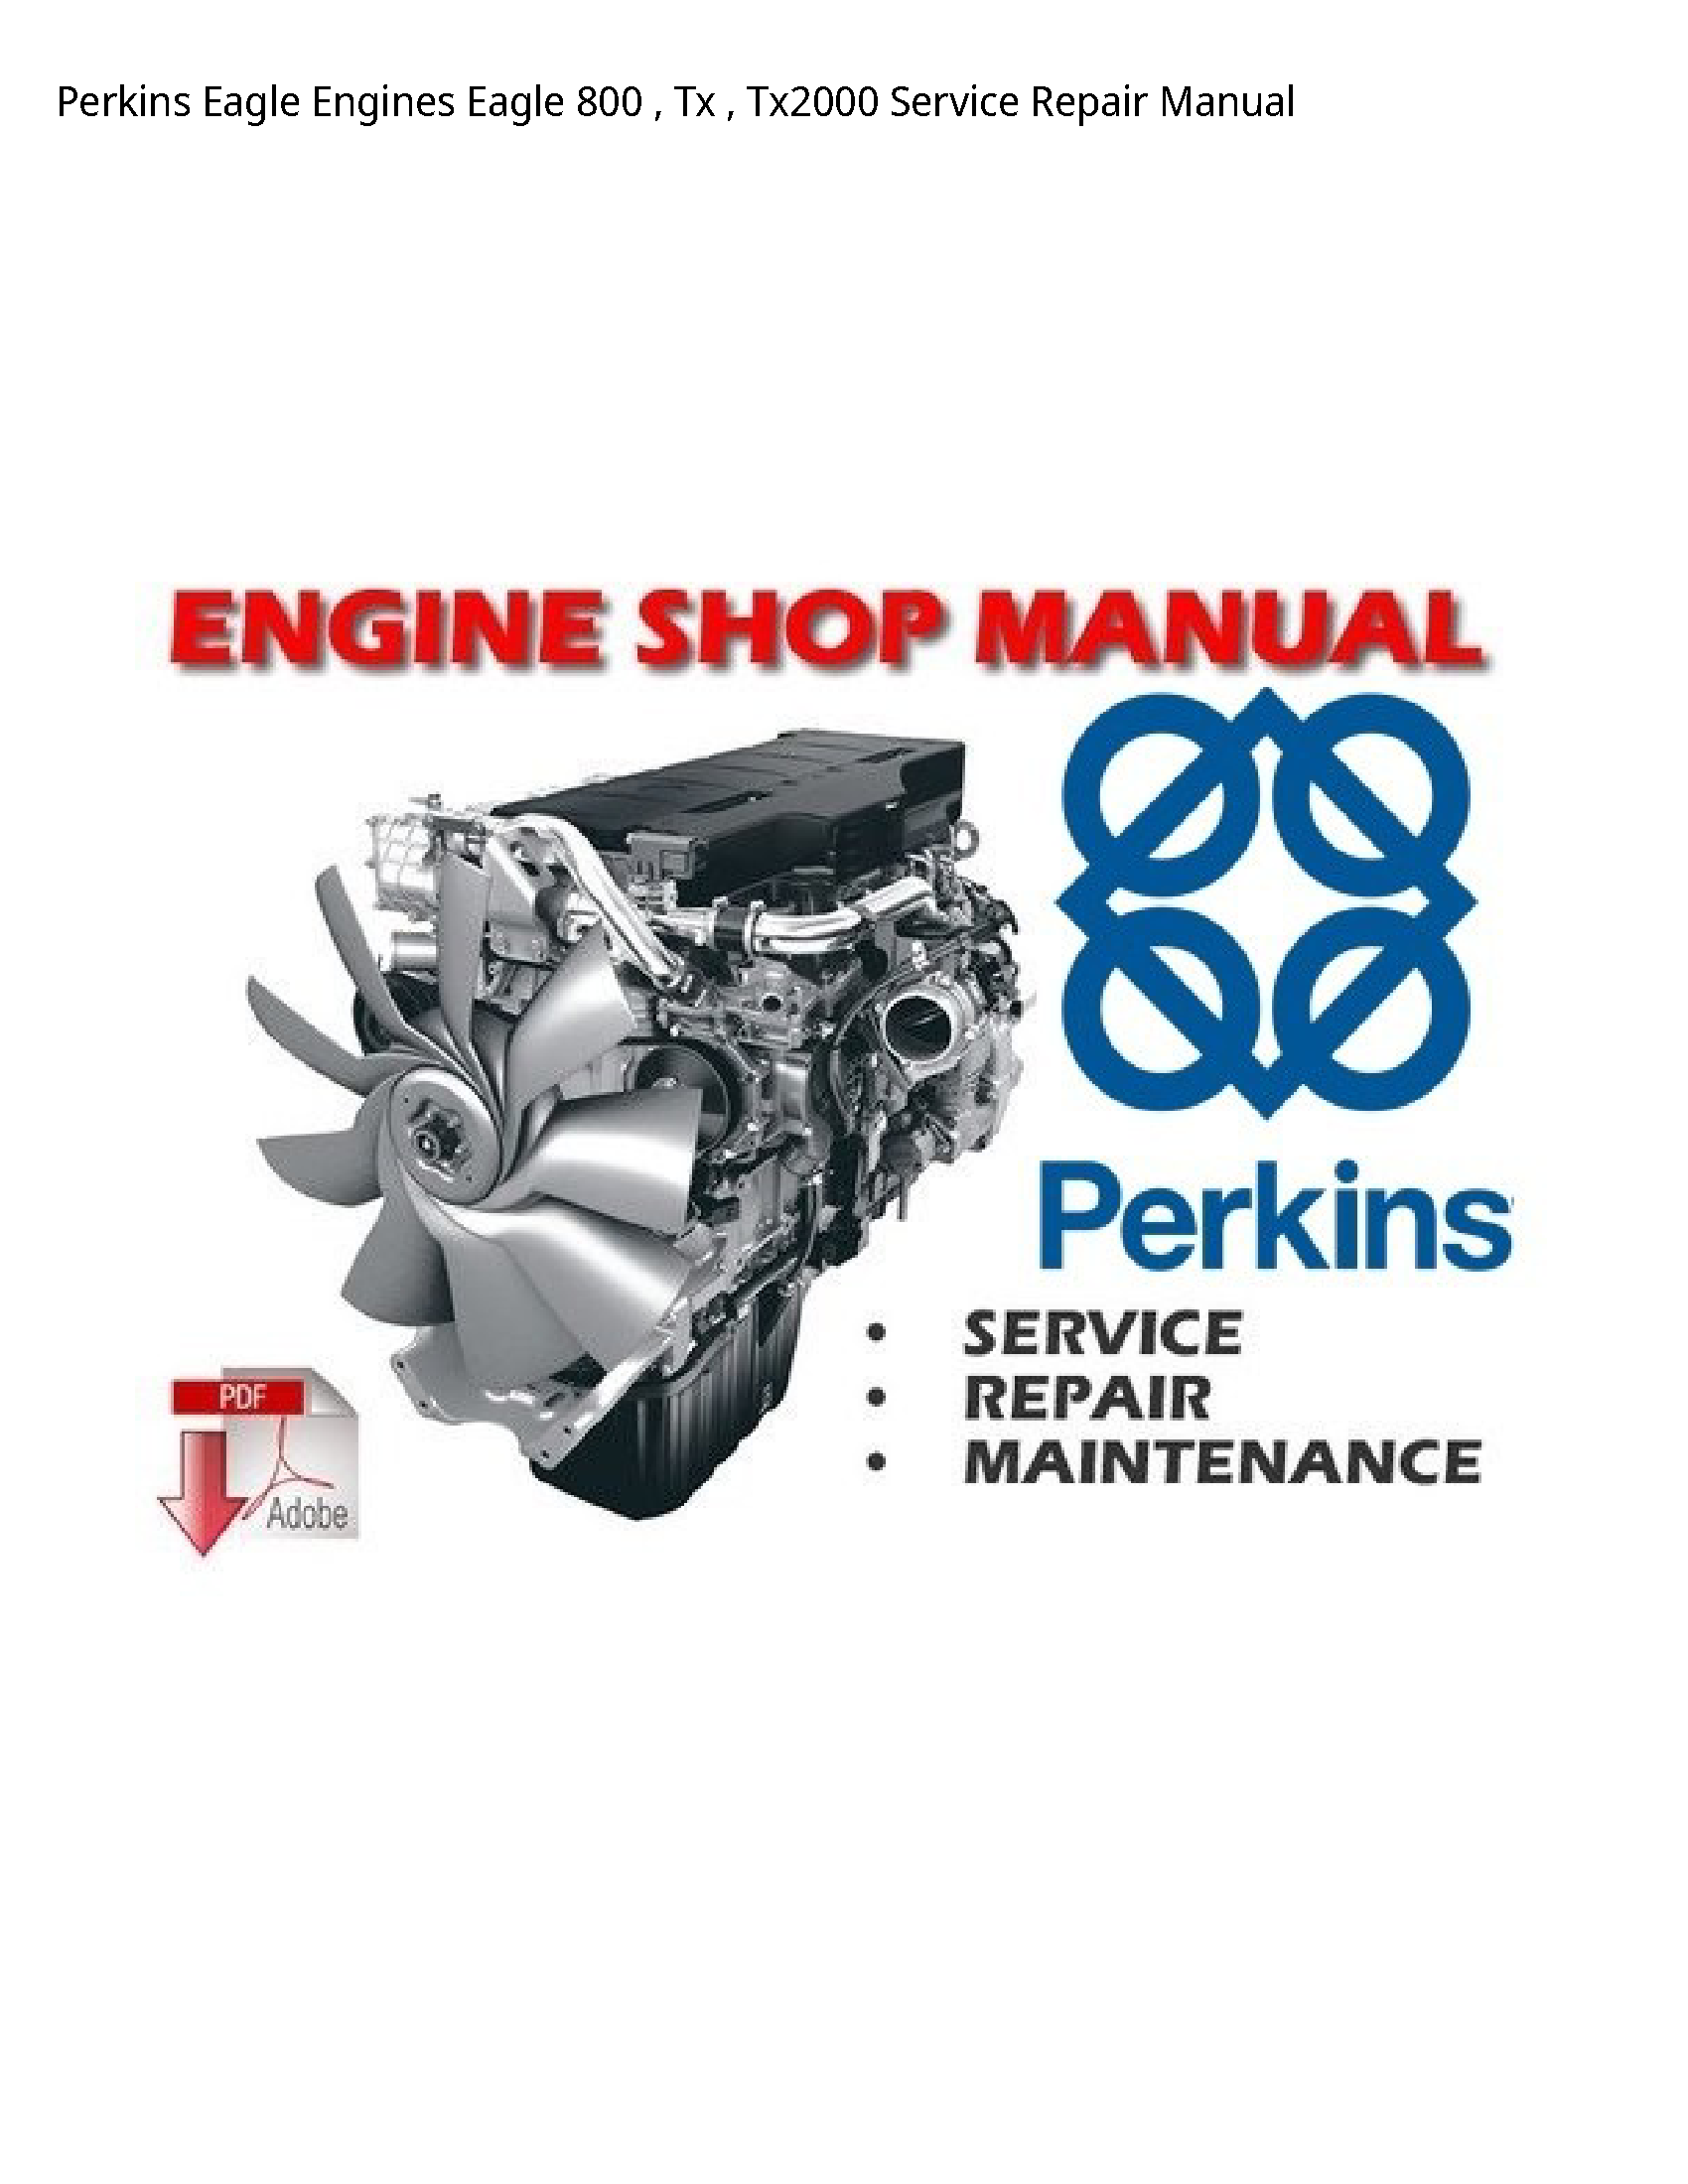 Perkins 800 Eagle Engines Eagle Tx manual